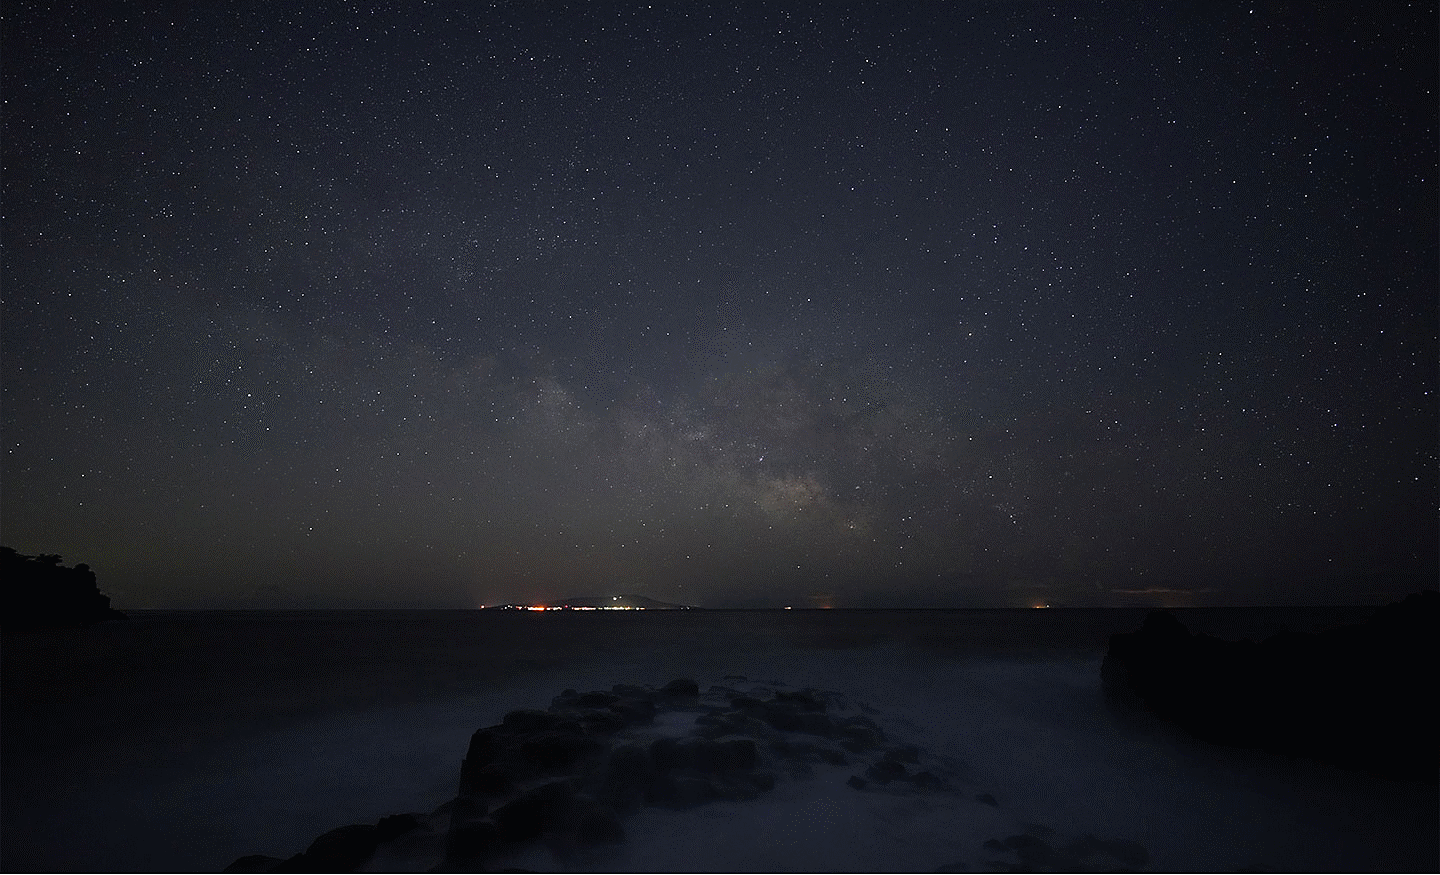 صور نجوم تُظهر مجرة درب التبانة فوق البحر